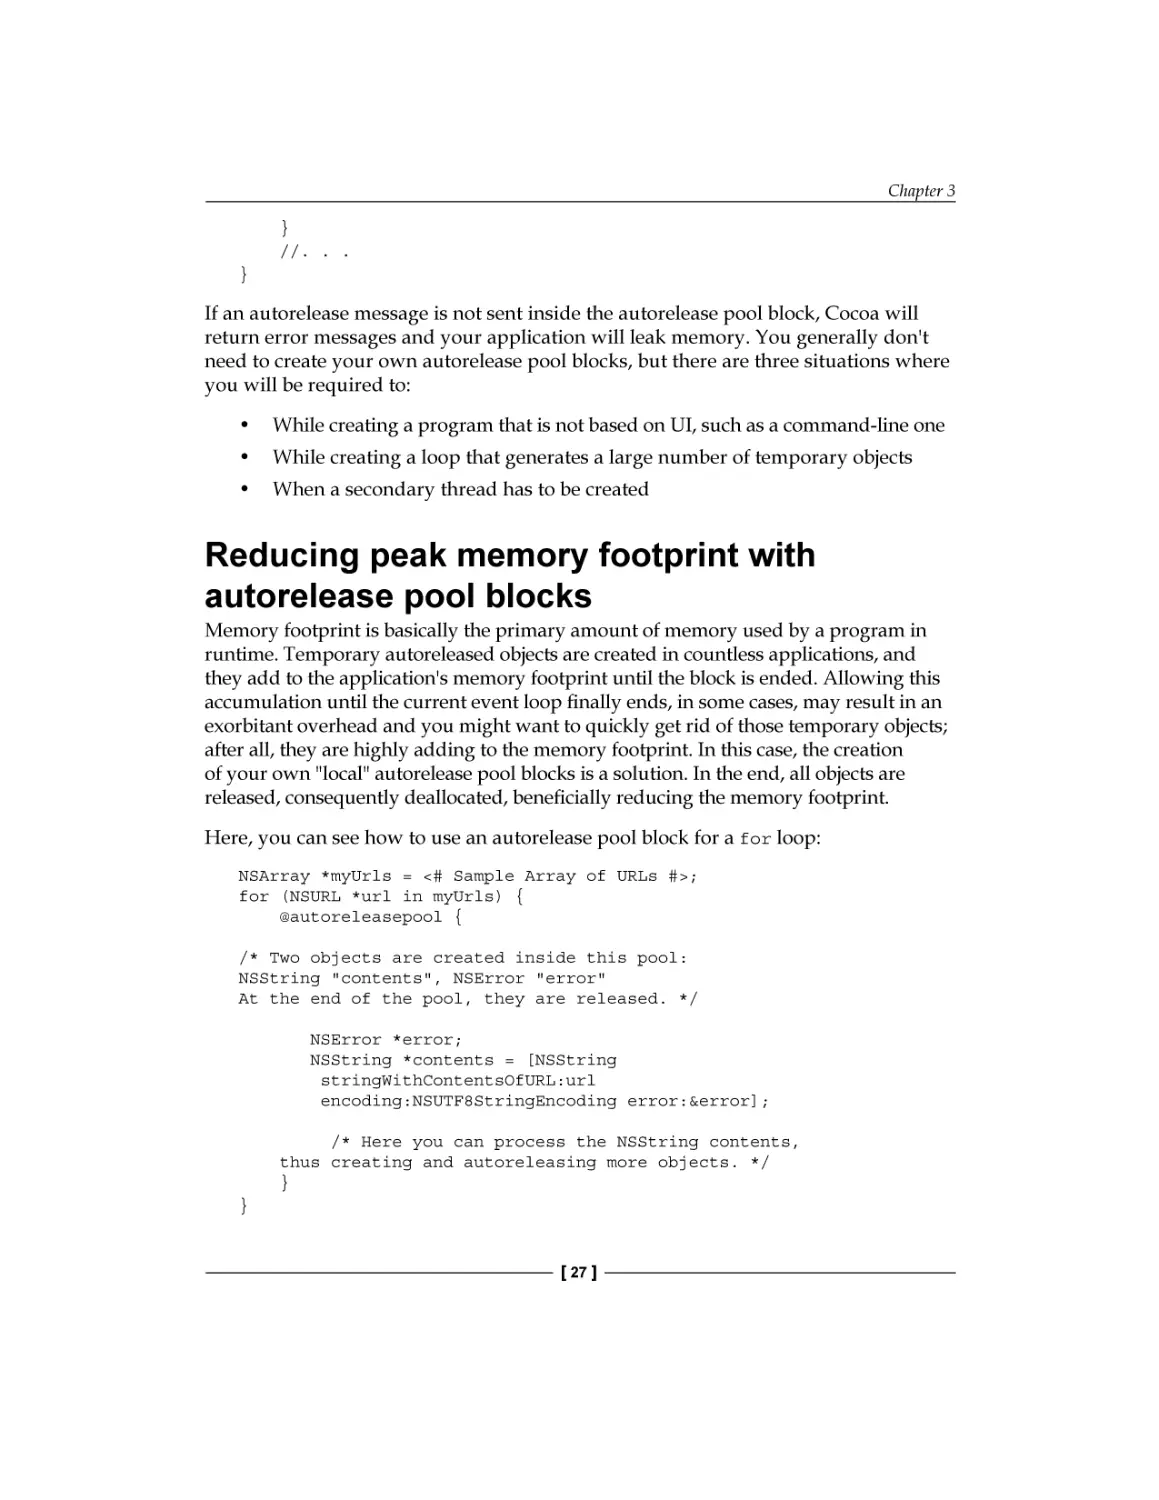 Reducing peak memory footprint with autorelease pool blocks